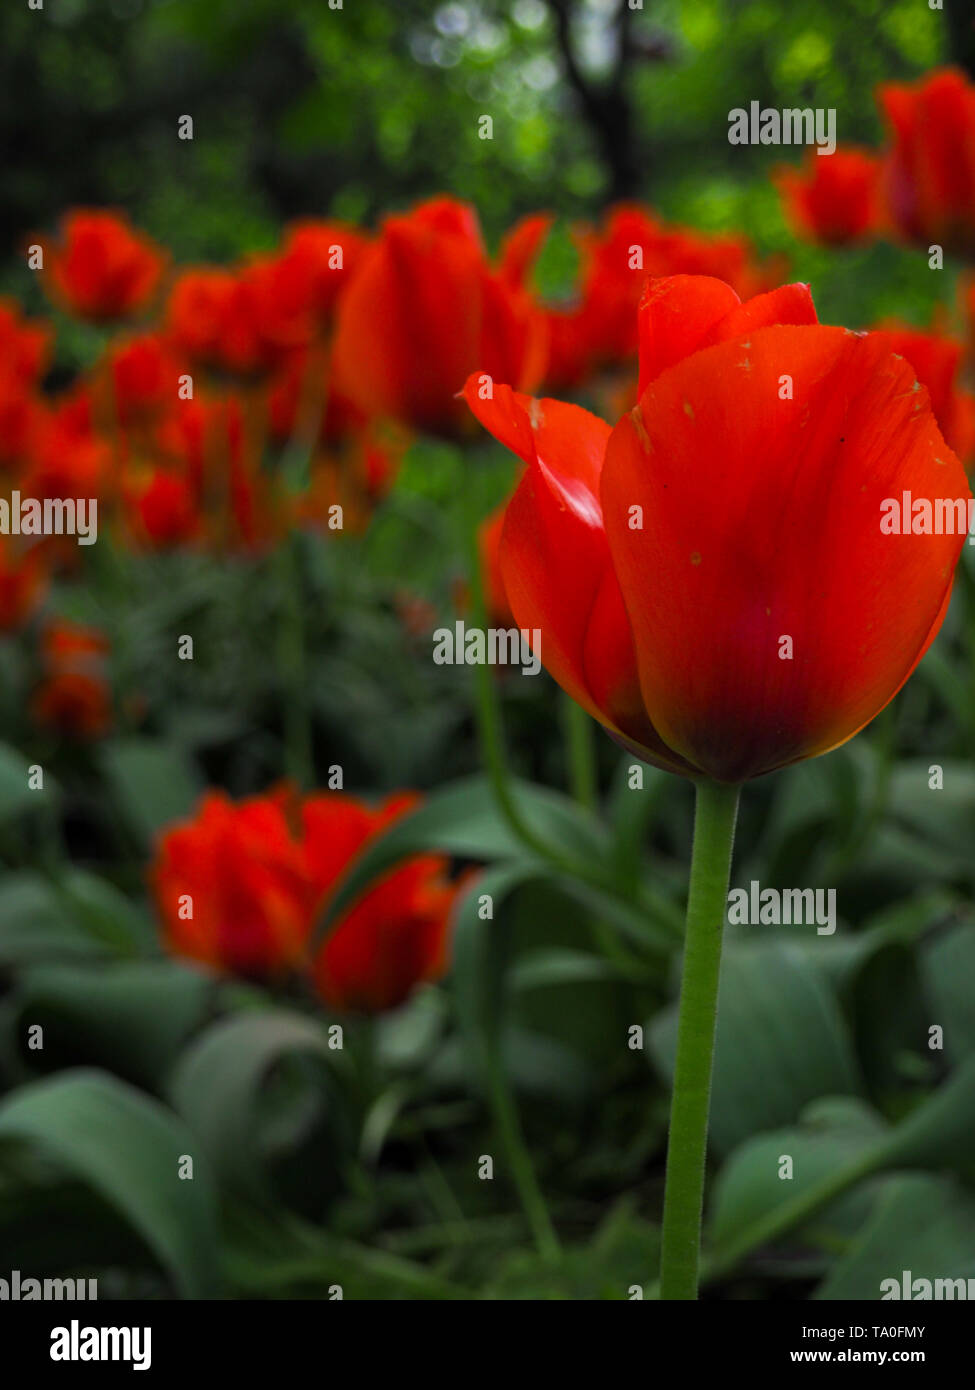 Bella tulipani colorati su un campo, cartolina o greetingcard per motherday e Pasqua Foto Stock